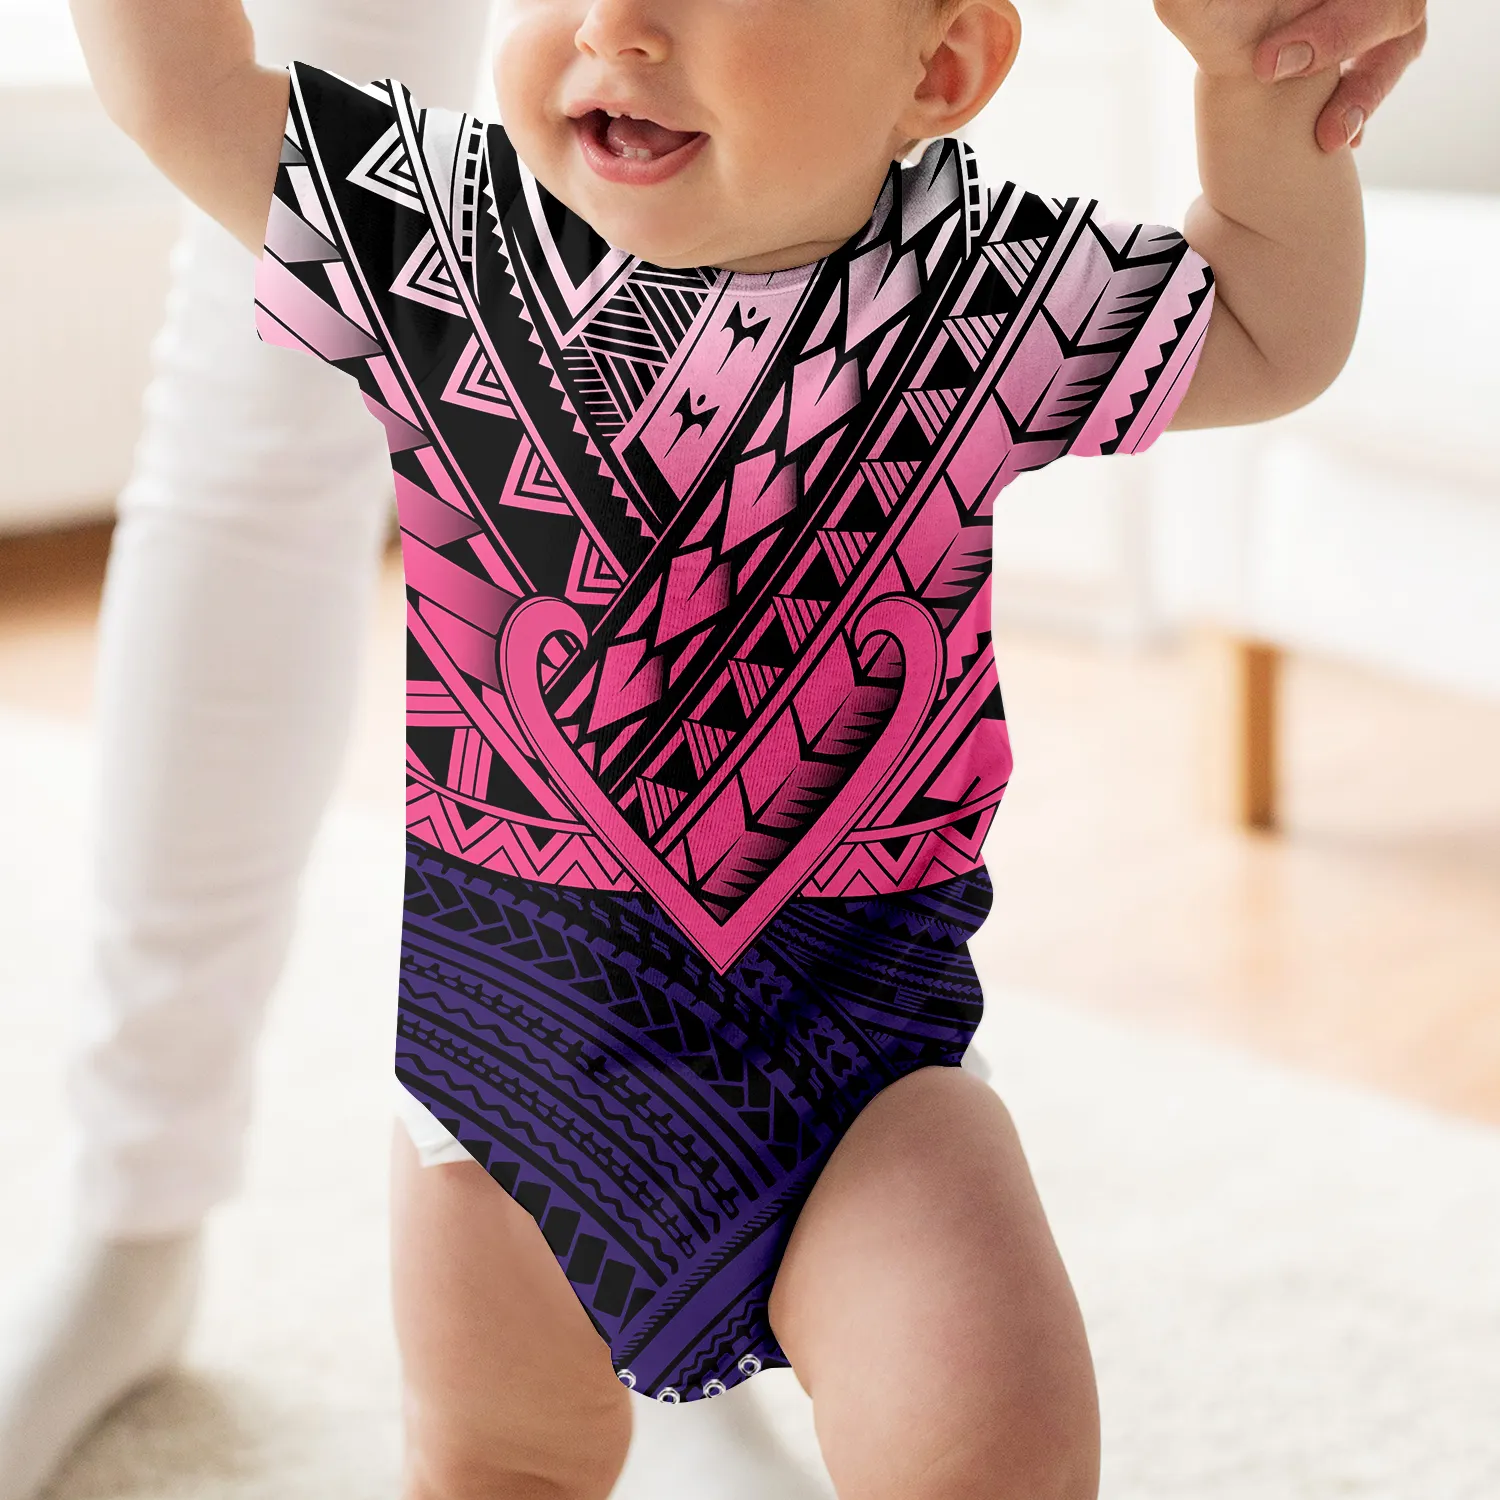 Venta al por mayor de bajo precio de verano acogedor suave bebé Romper Unisex ropa barata 0-24 M Polinesia ropa de bebé de manga corta Body de bebé